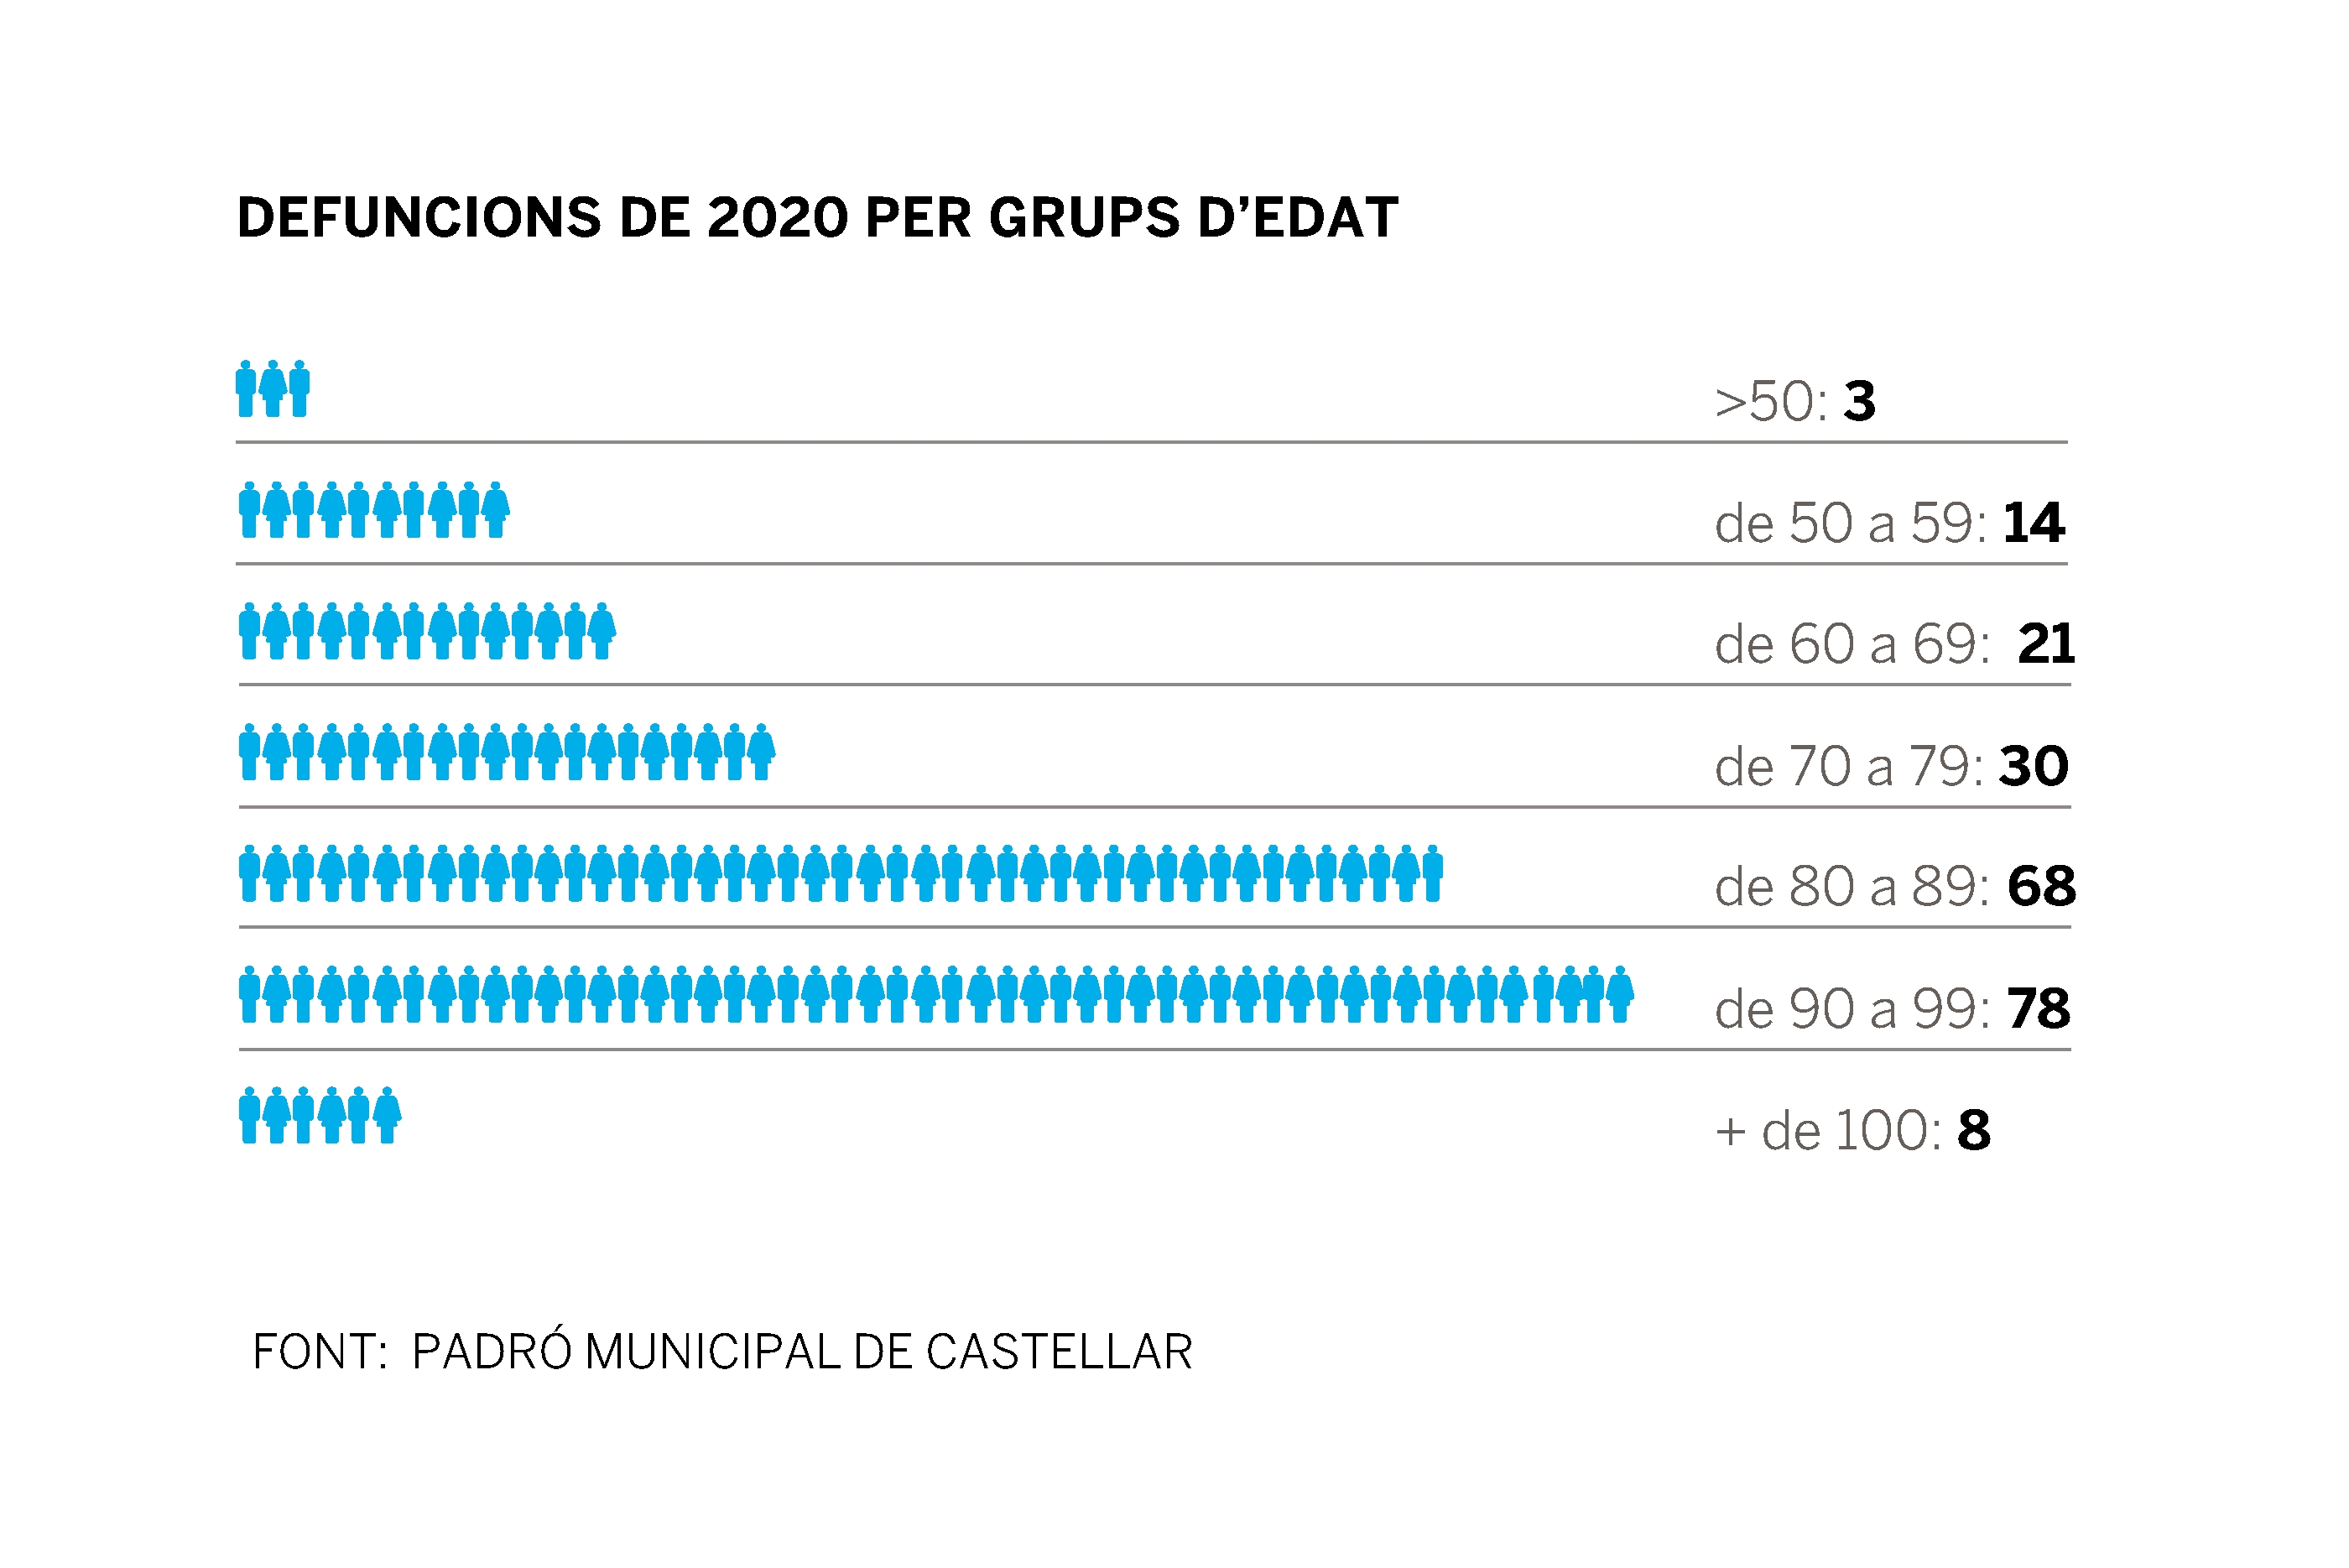 Les defuncions a Castellar l'any 2020 per franges d'edat